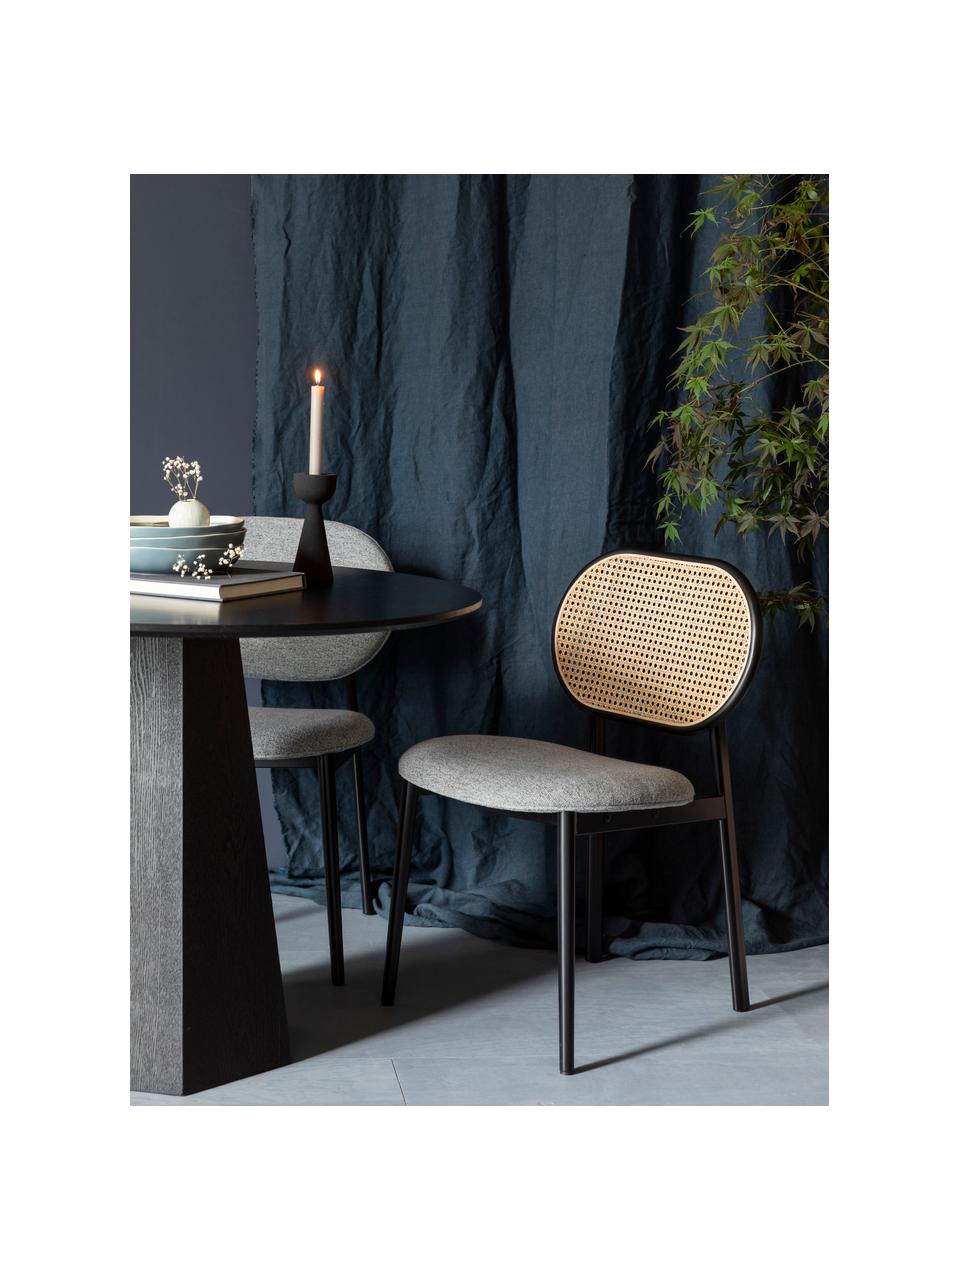 Gestoffeerde stoel Spike met Weens vlechtwerk, Bekleding: 100% polyester, Frame: massief berkenhout, gelak, Poten: gepoedercoat staal, Grijs, zwart, beige, B 46 x D 58 cm